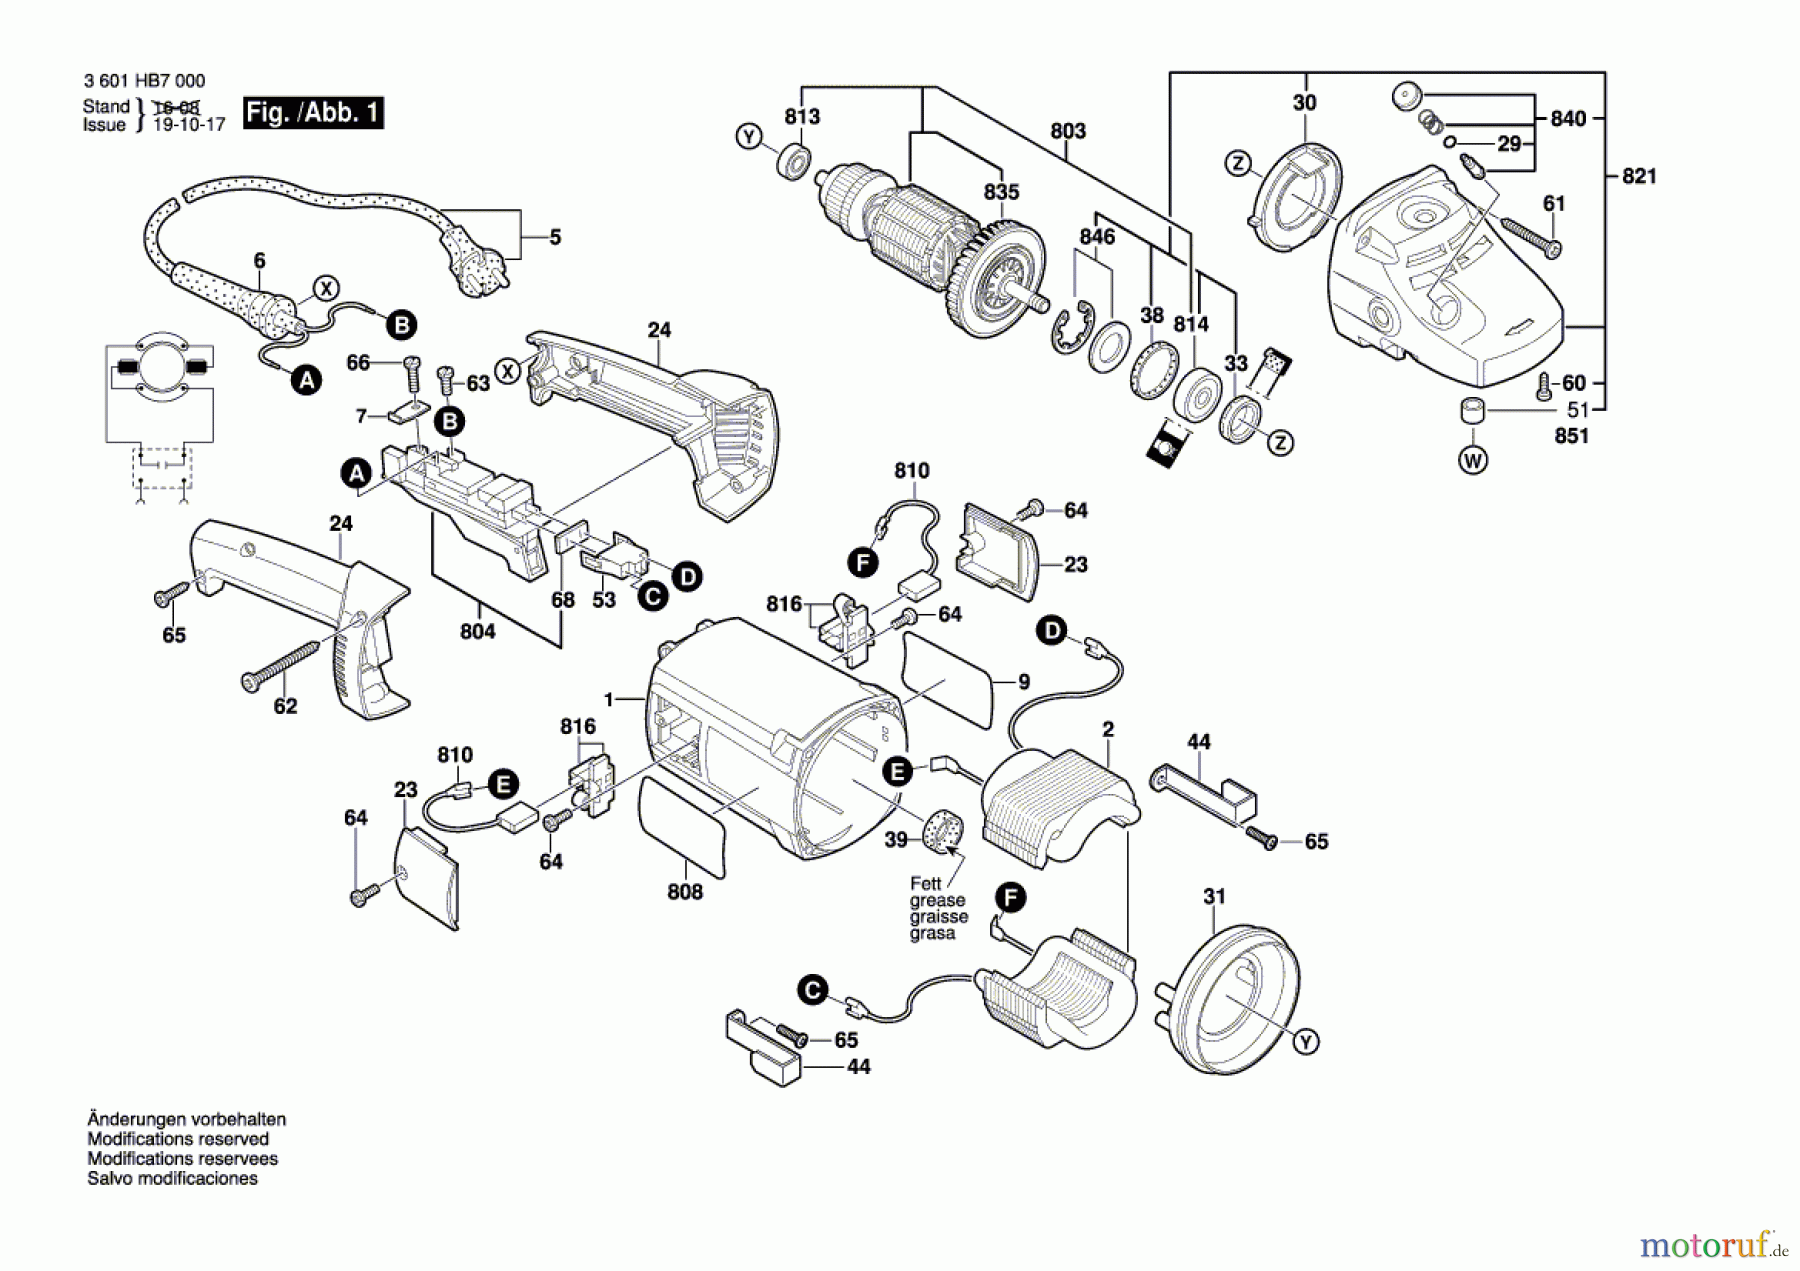  Bosch Werkzeug Winkelschleifer GWS 2000 Seite 1